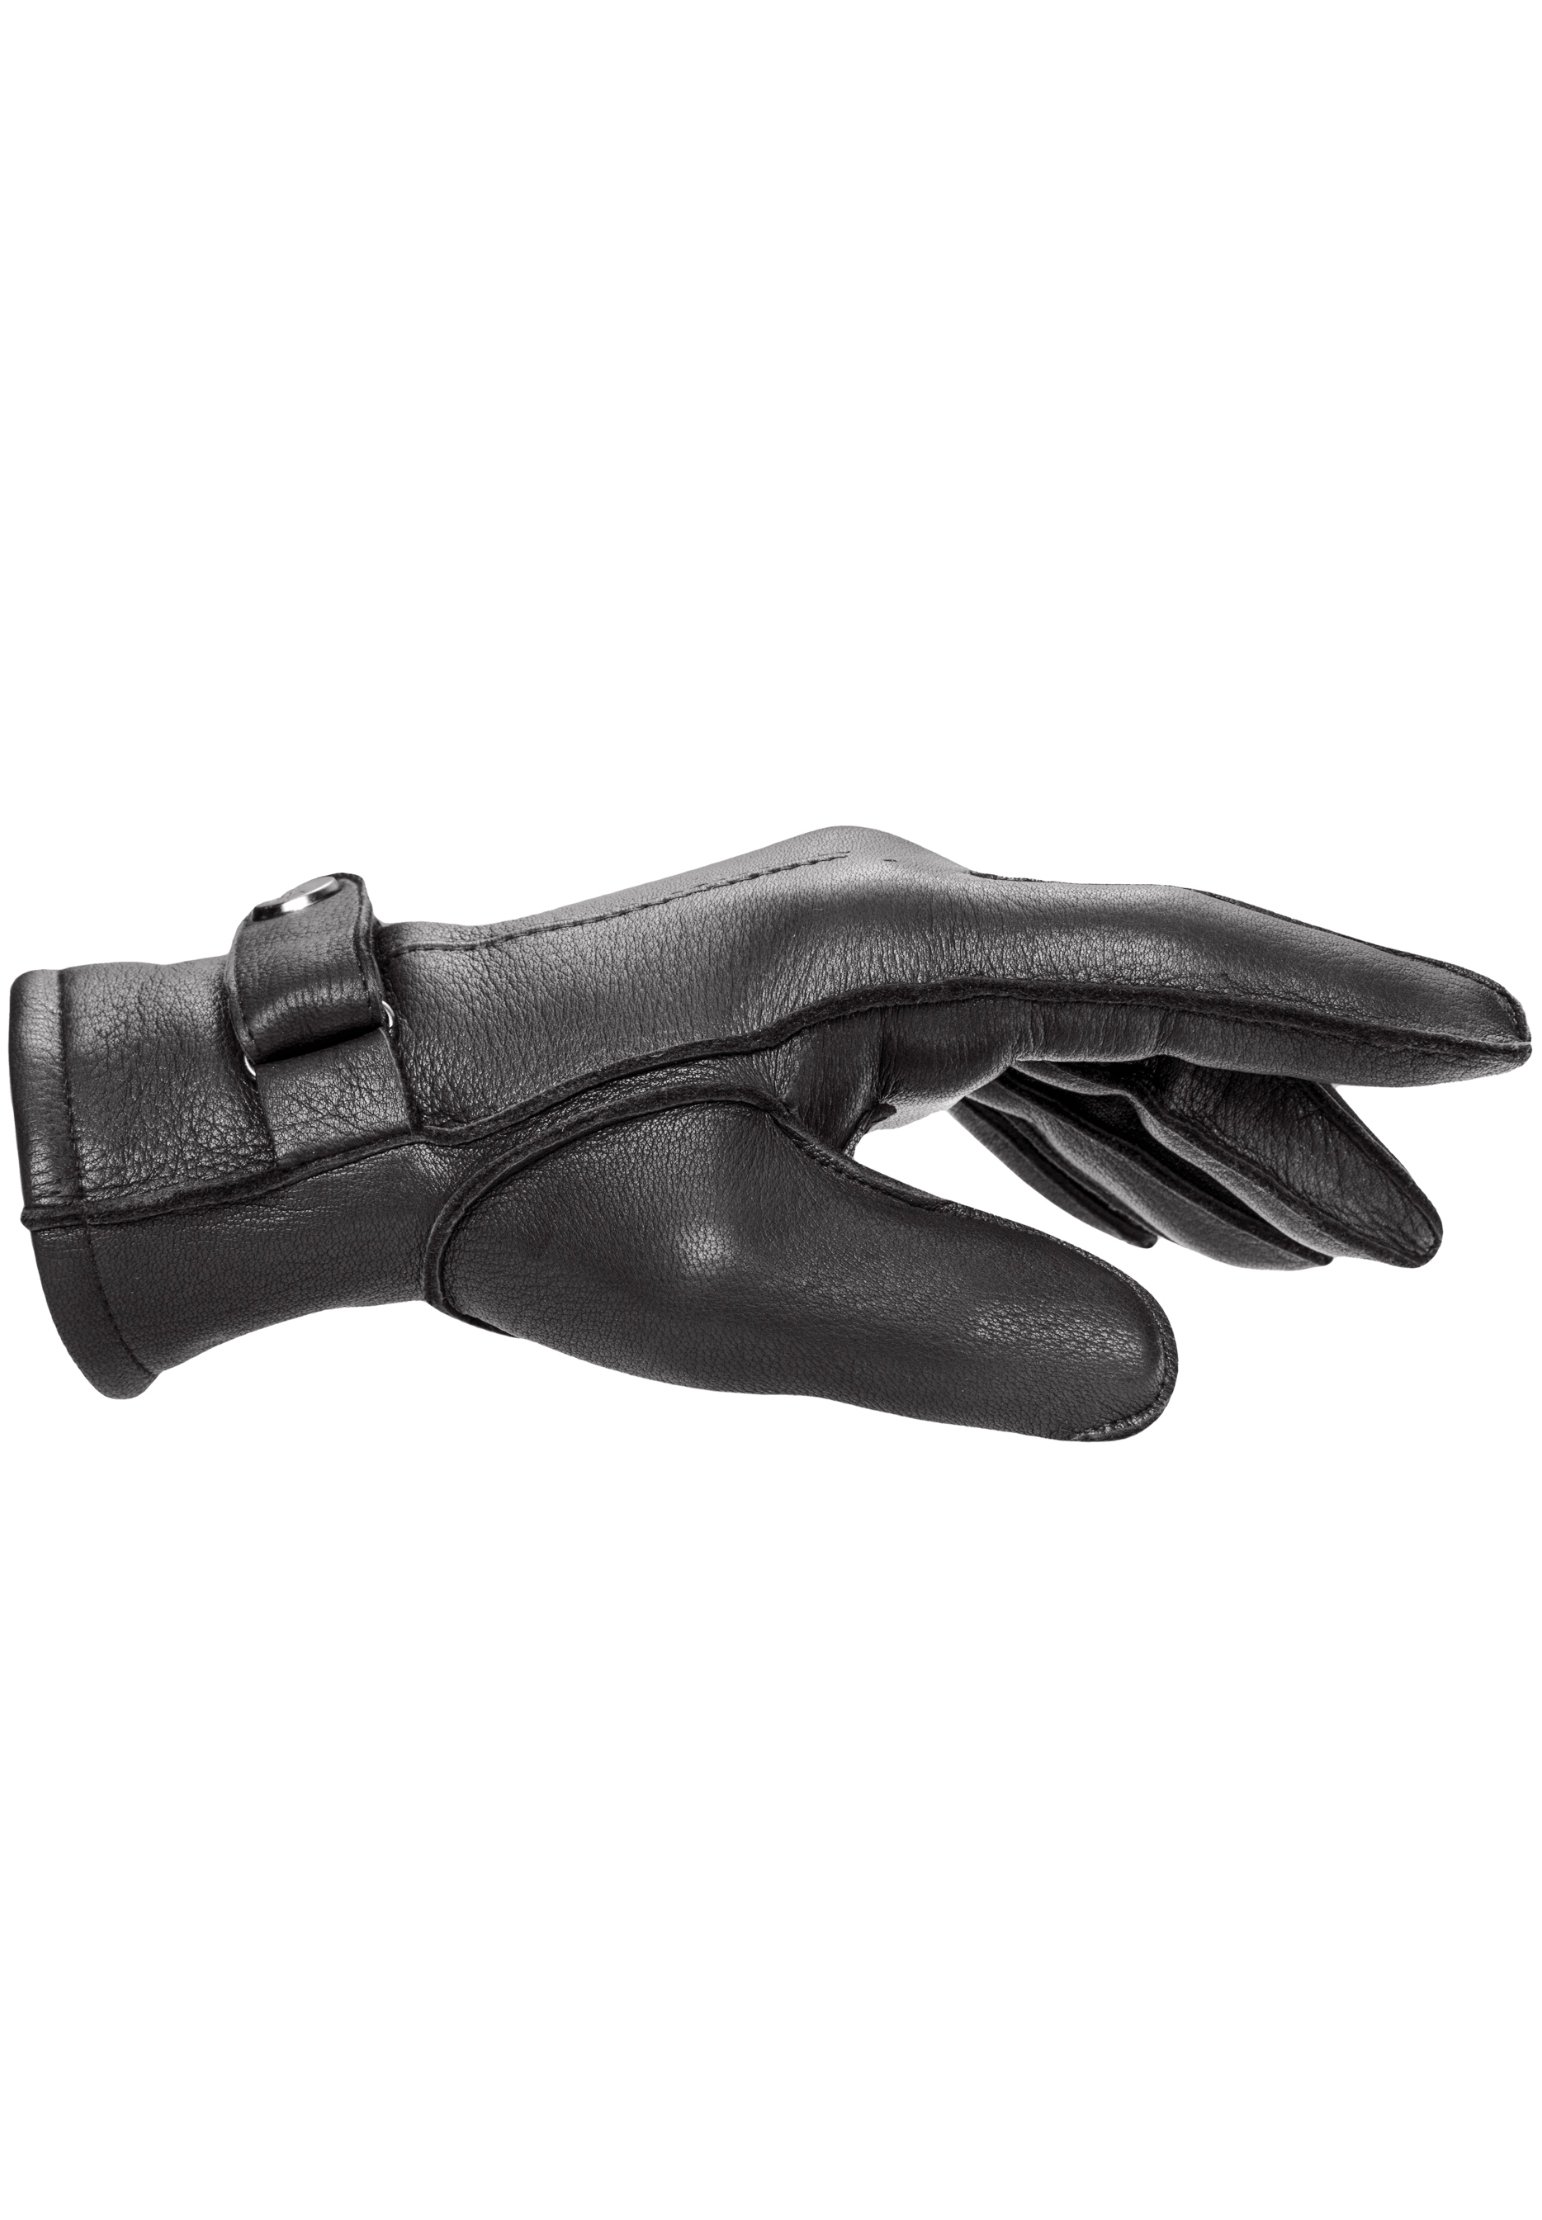 Pearlwood Fingerhandschuhe schwarz – Rebmann aus Maßkleidung Hirschleder